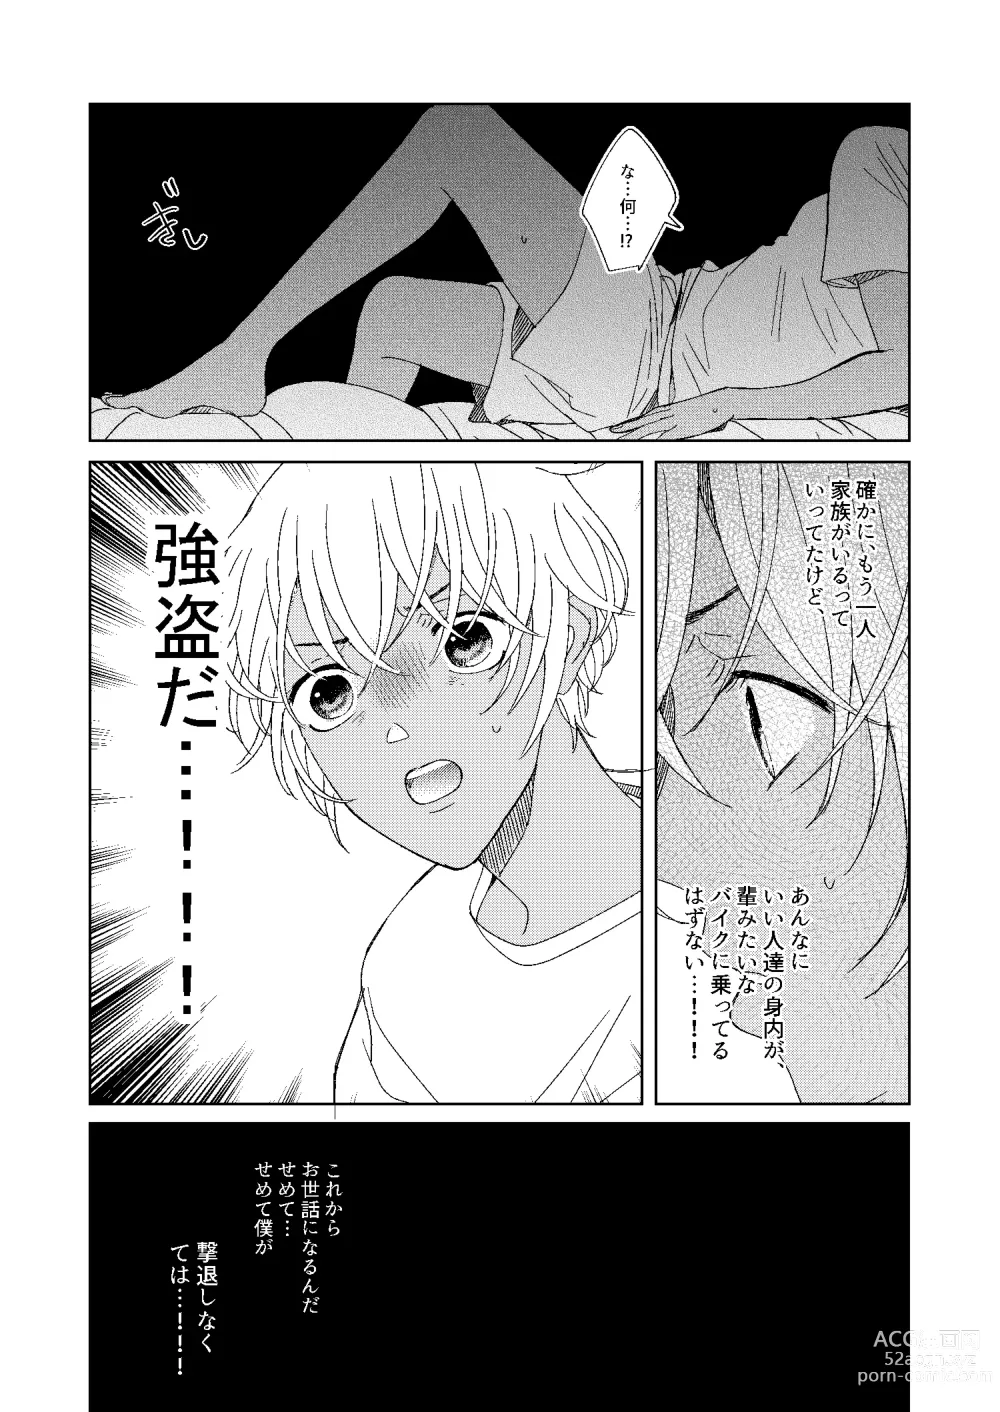 Page 8 of doujinshi Hatsukoi 2006